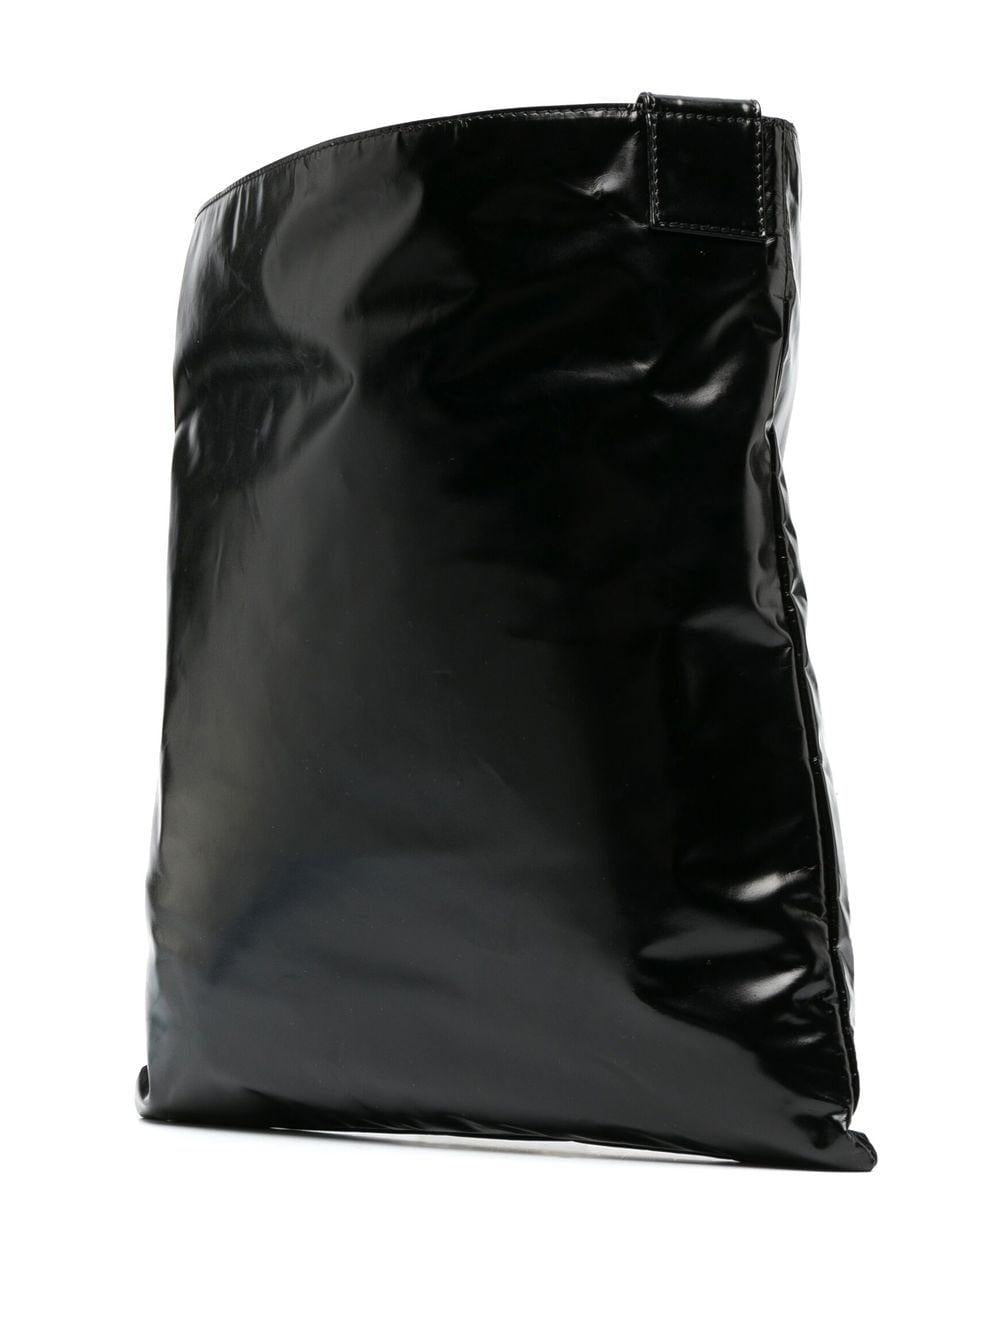 VALENTINO GARAVANI Black Leather Tote Handbag with Contrasting VLTN Print for Men